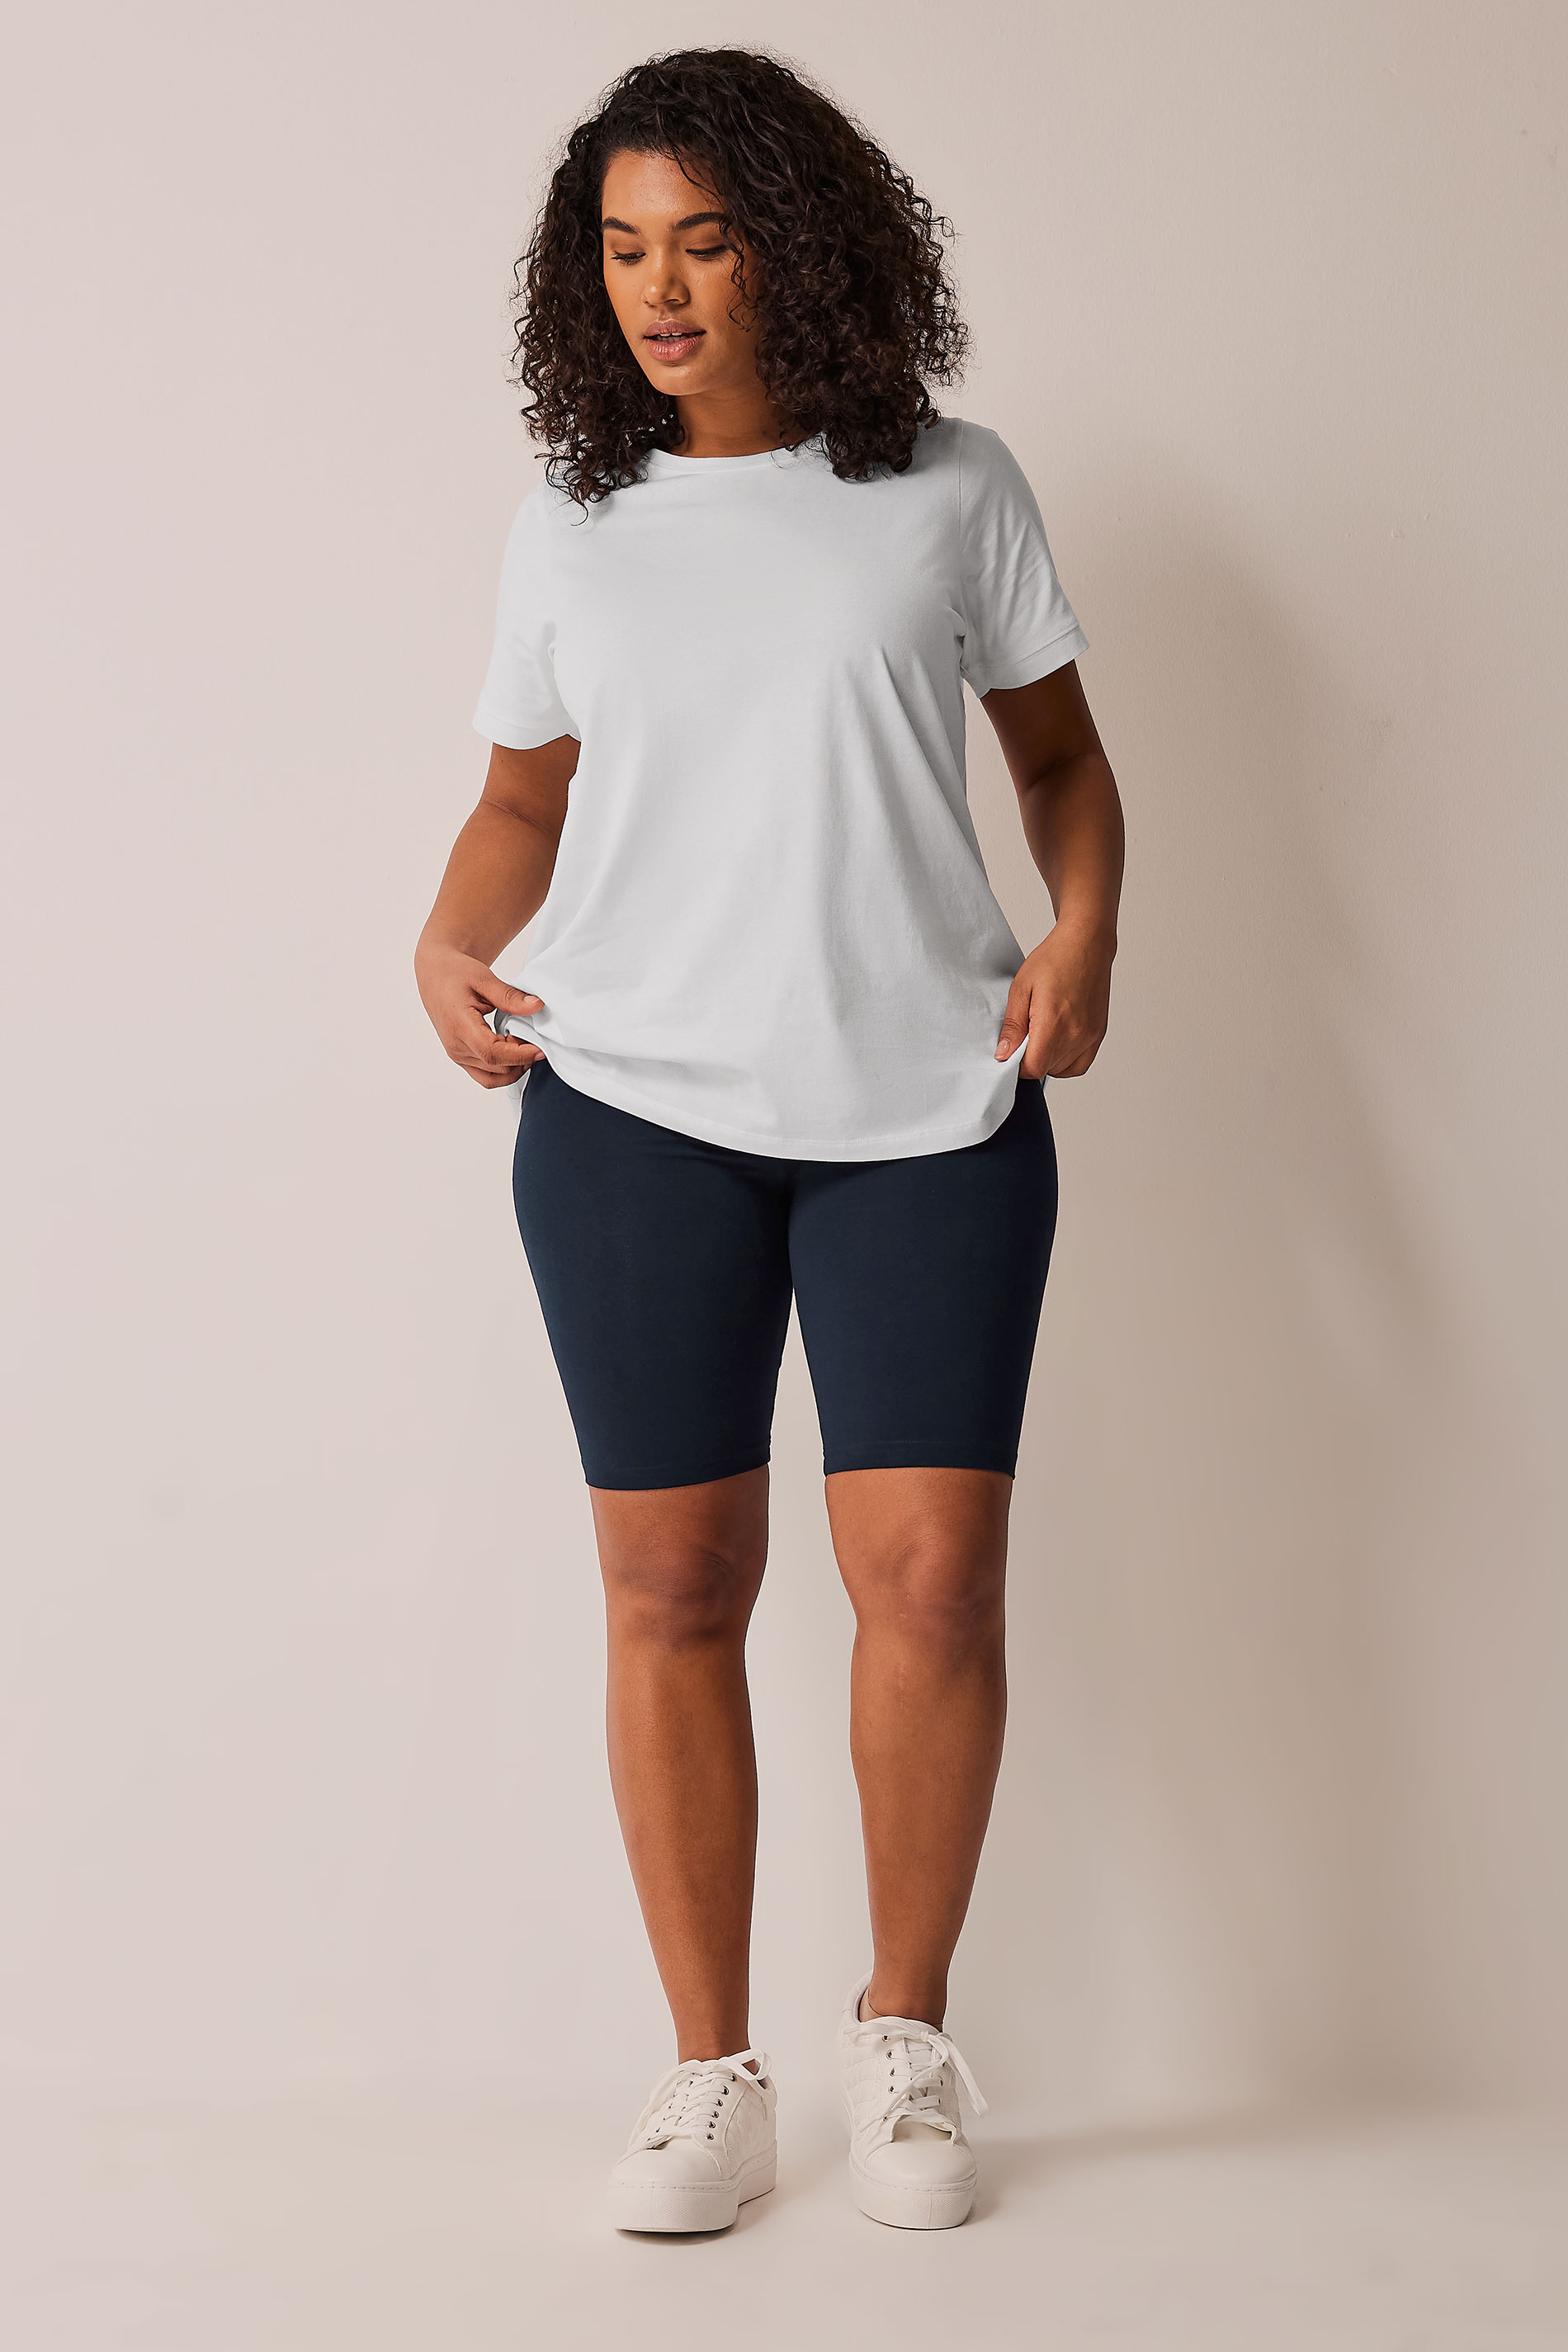 EVANS Plus Size White Essential T-Shirt | Evans 2